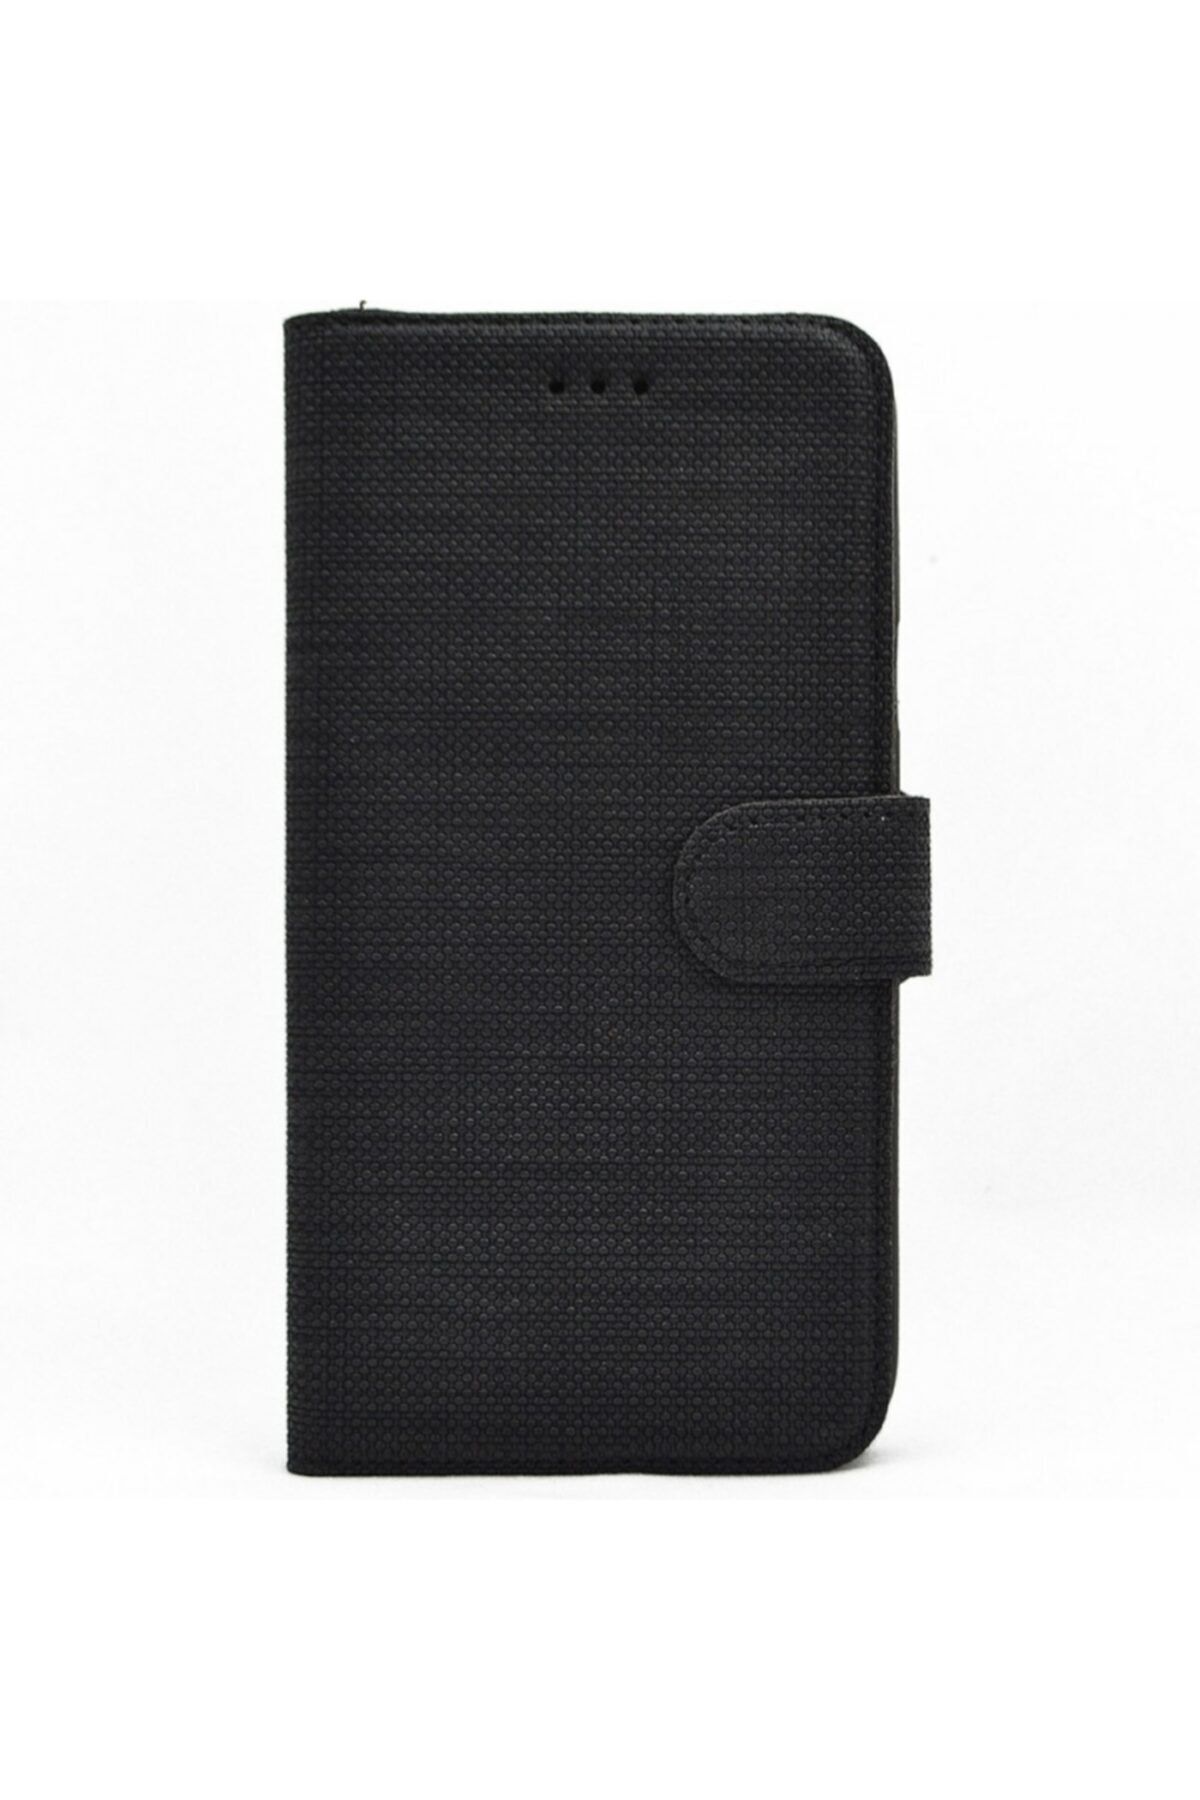 Samsung Galaxy A11 Kılıf Kumaş Spor Standlı Cüzdan Siyah